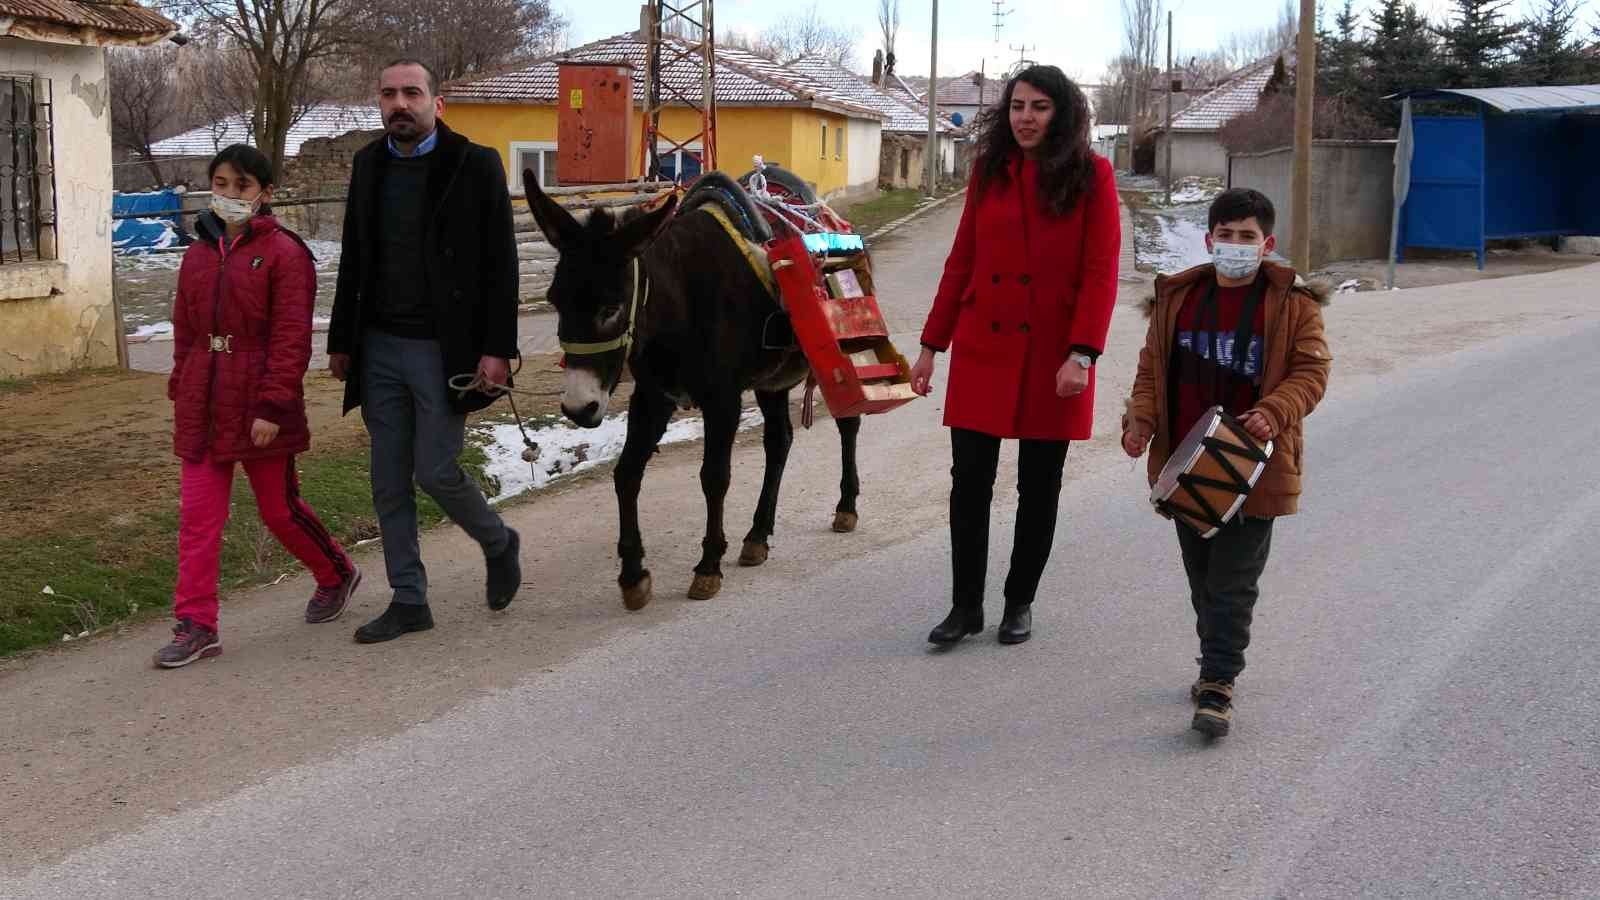 Yozgat’ta öğretmenler “Eşekli kütüphane” ile köy halkını kitapla buluşturuyor #yozgat